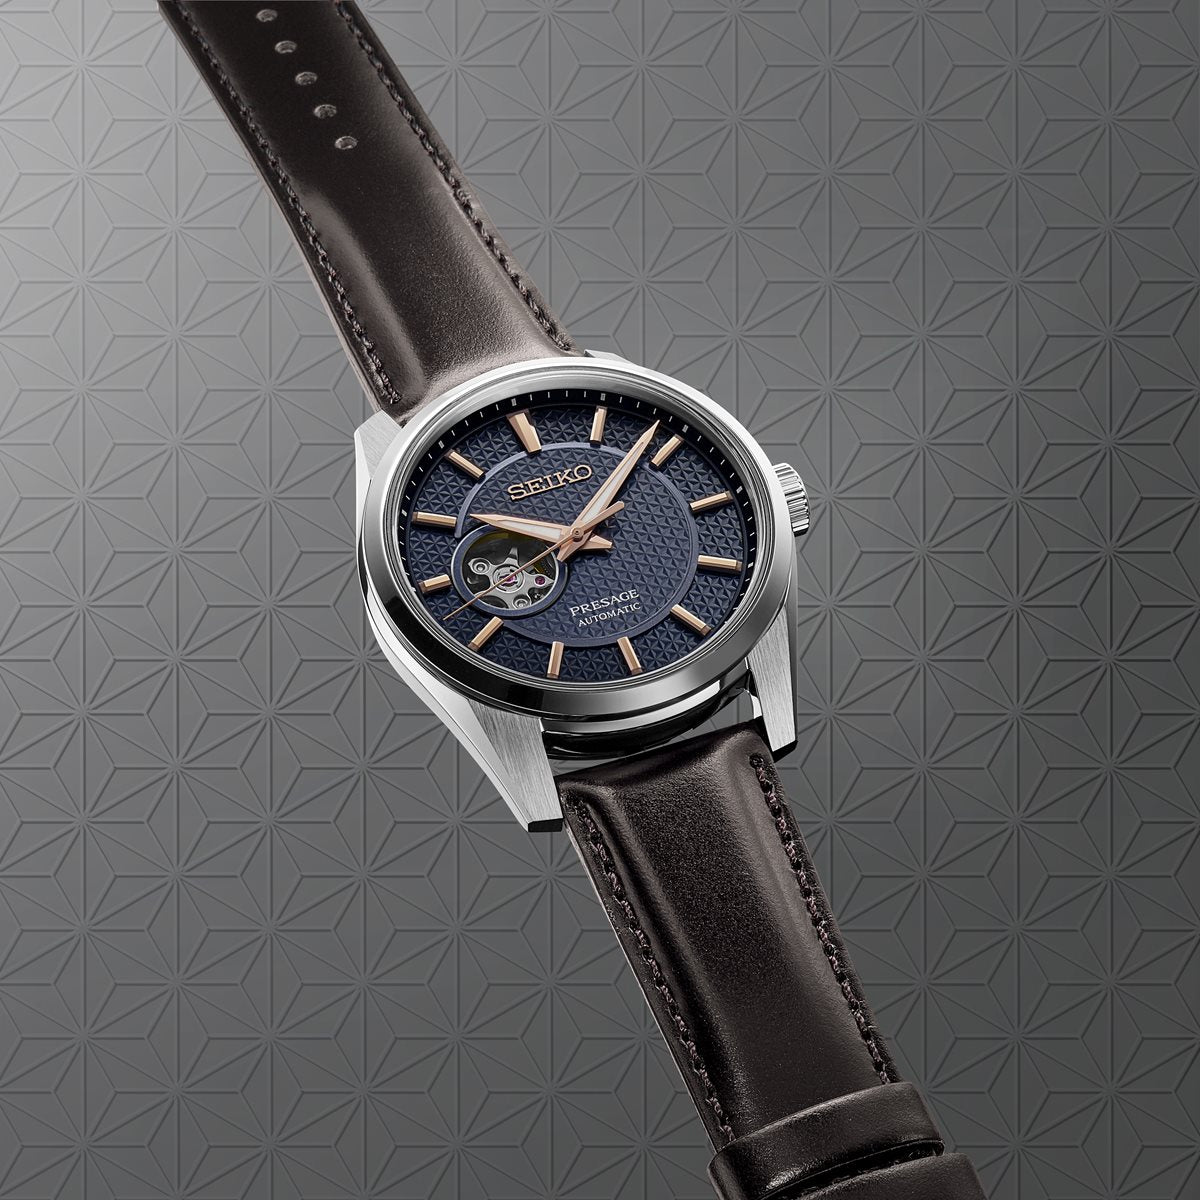 セイコー SEIKO 腕時計 メンズ SARX099 セイコー メカニカル プレザージュ プレステージライン シャープ エッジ ド シリーズ Prestige line Sharp Edged Series 自動巻き（6R38/手巻つき） ネイビーxブラウン アナログ表示